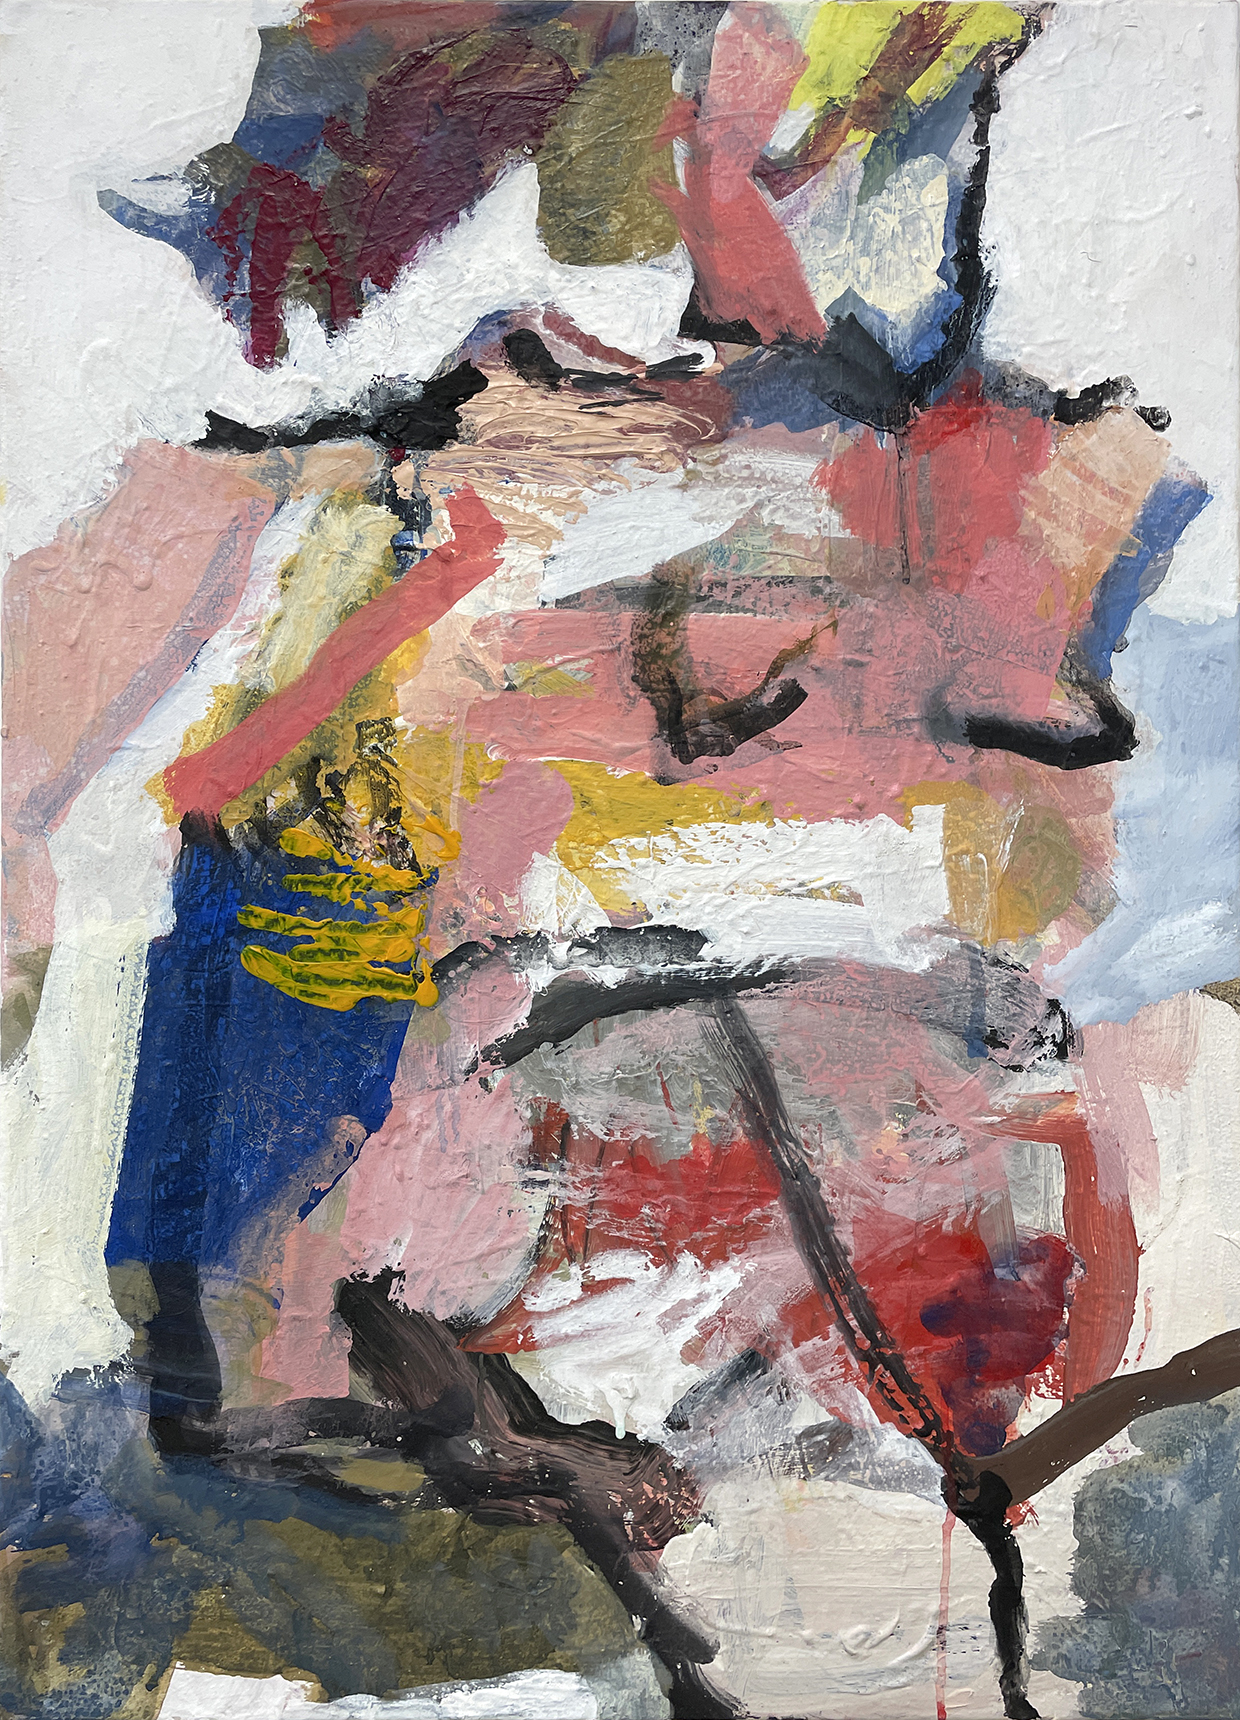 Frau mit Zopf, 202490 x 65 cmAcrylic on canvas